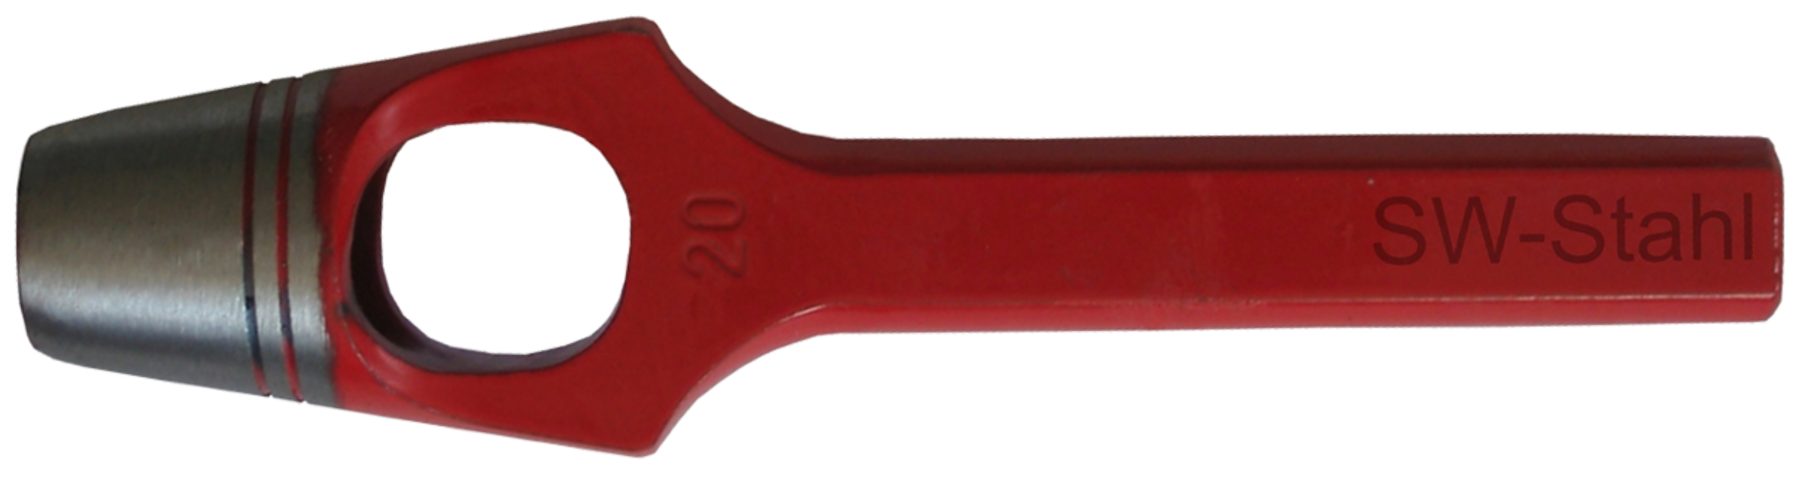 SW-STAHL Multitool 95003L Henkellocheisen ø 3 mm, rot lackiert, geschliffen